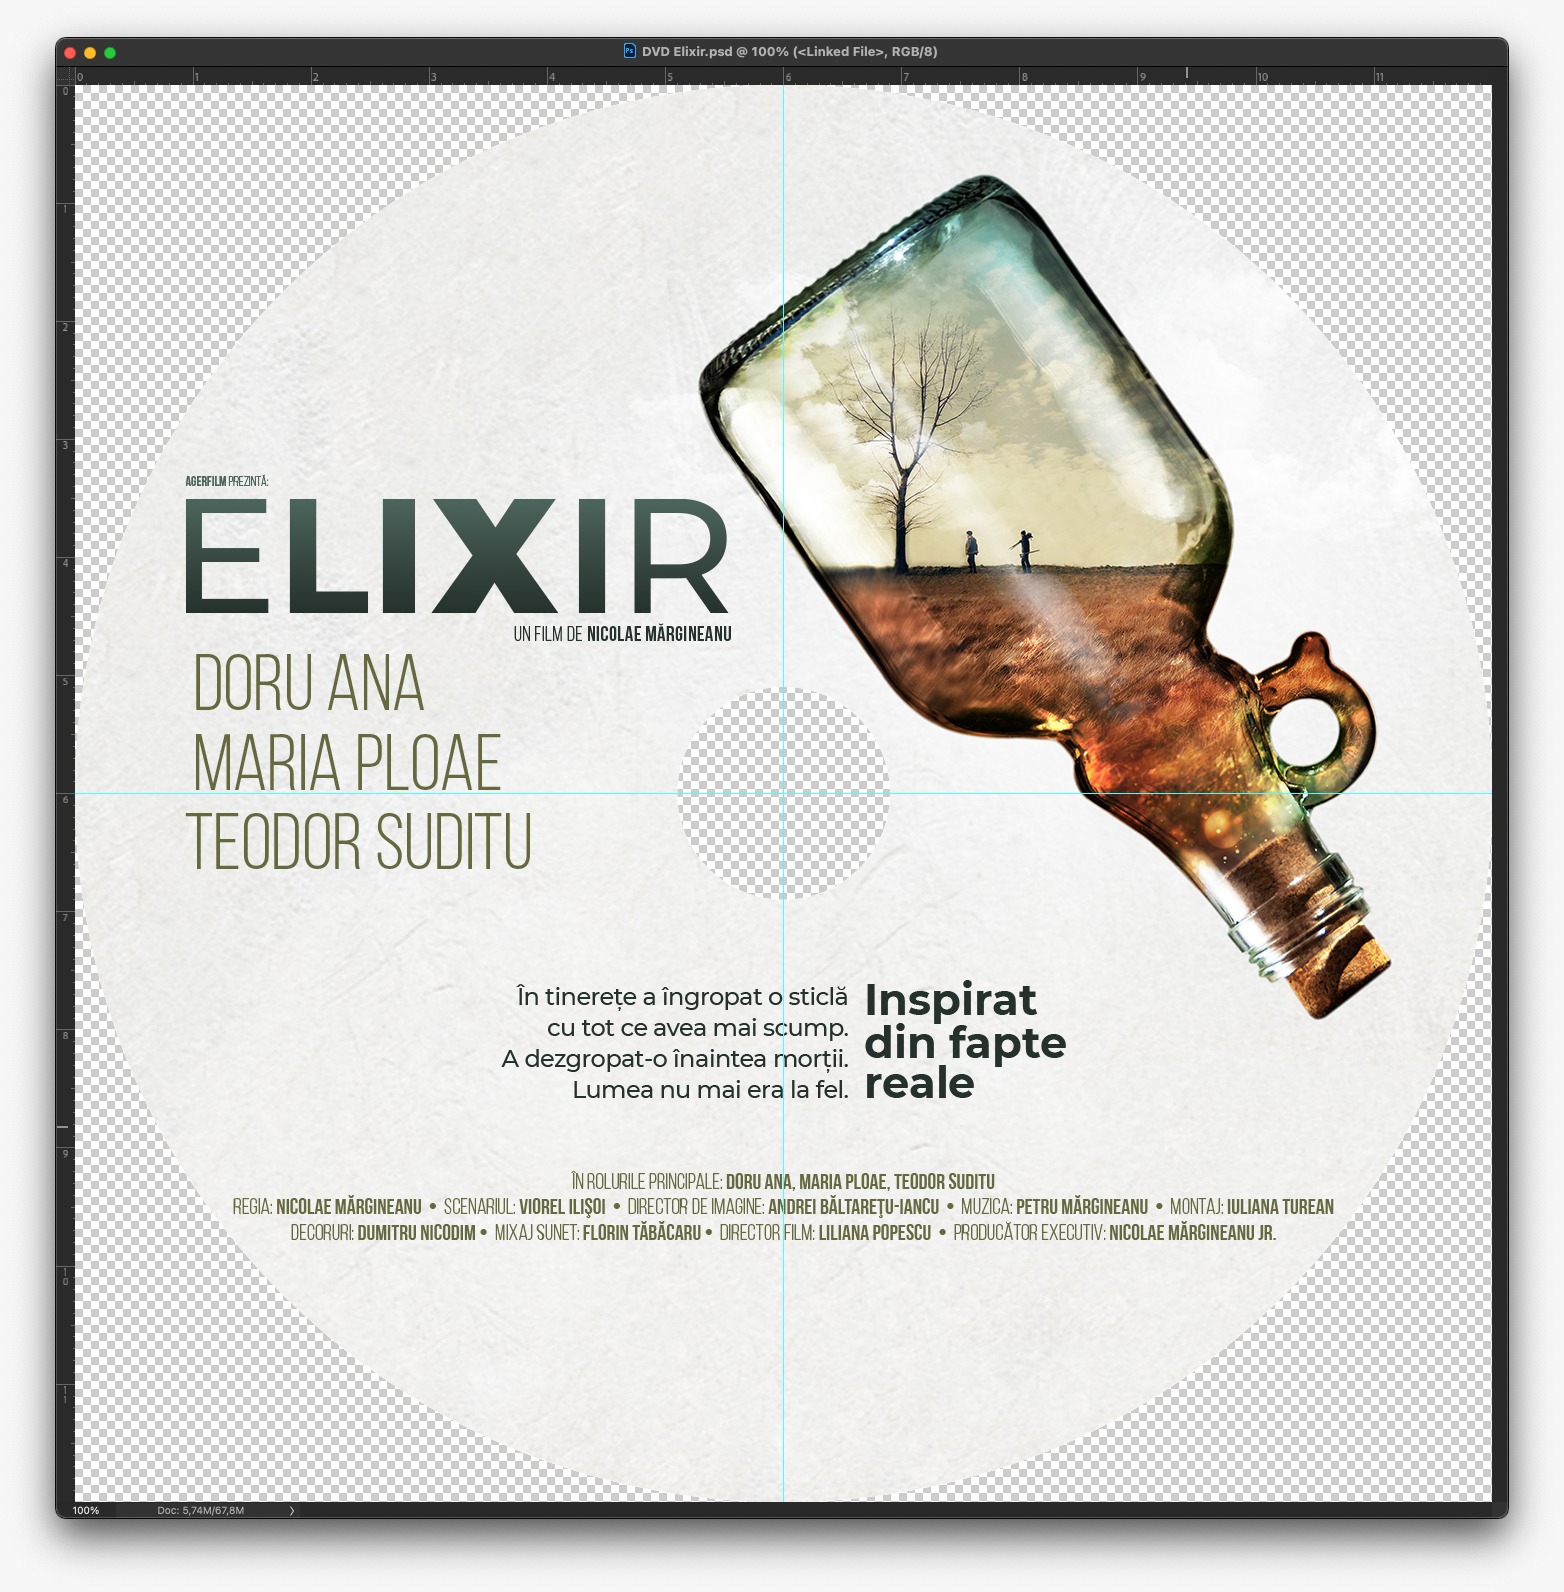 ELIXIR (Download)